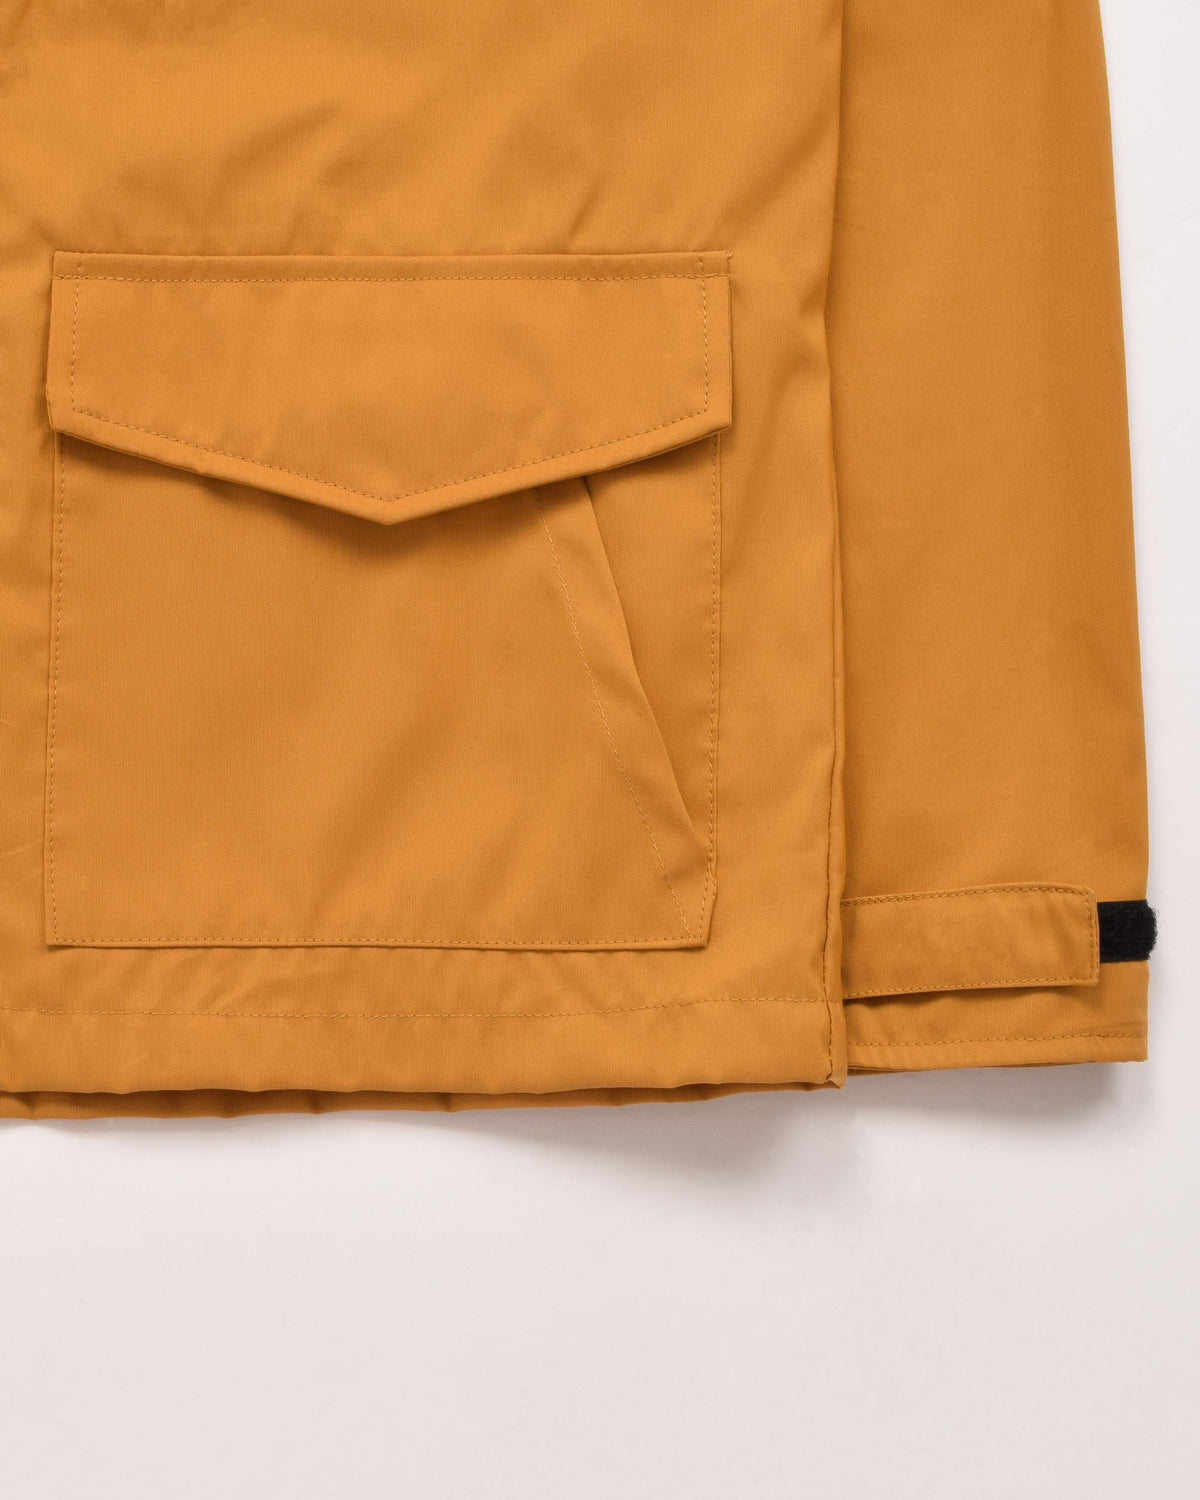 Michi Jacket in Mustard showing lower pocket detail